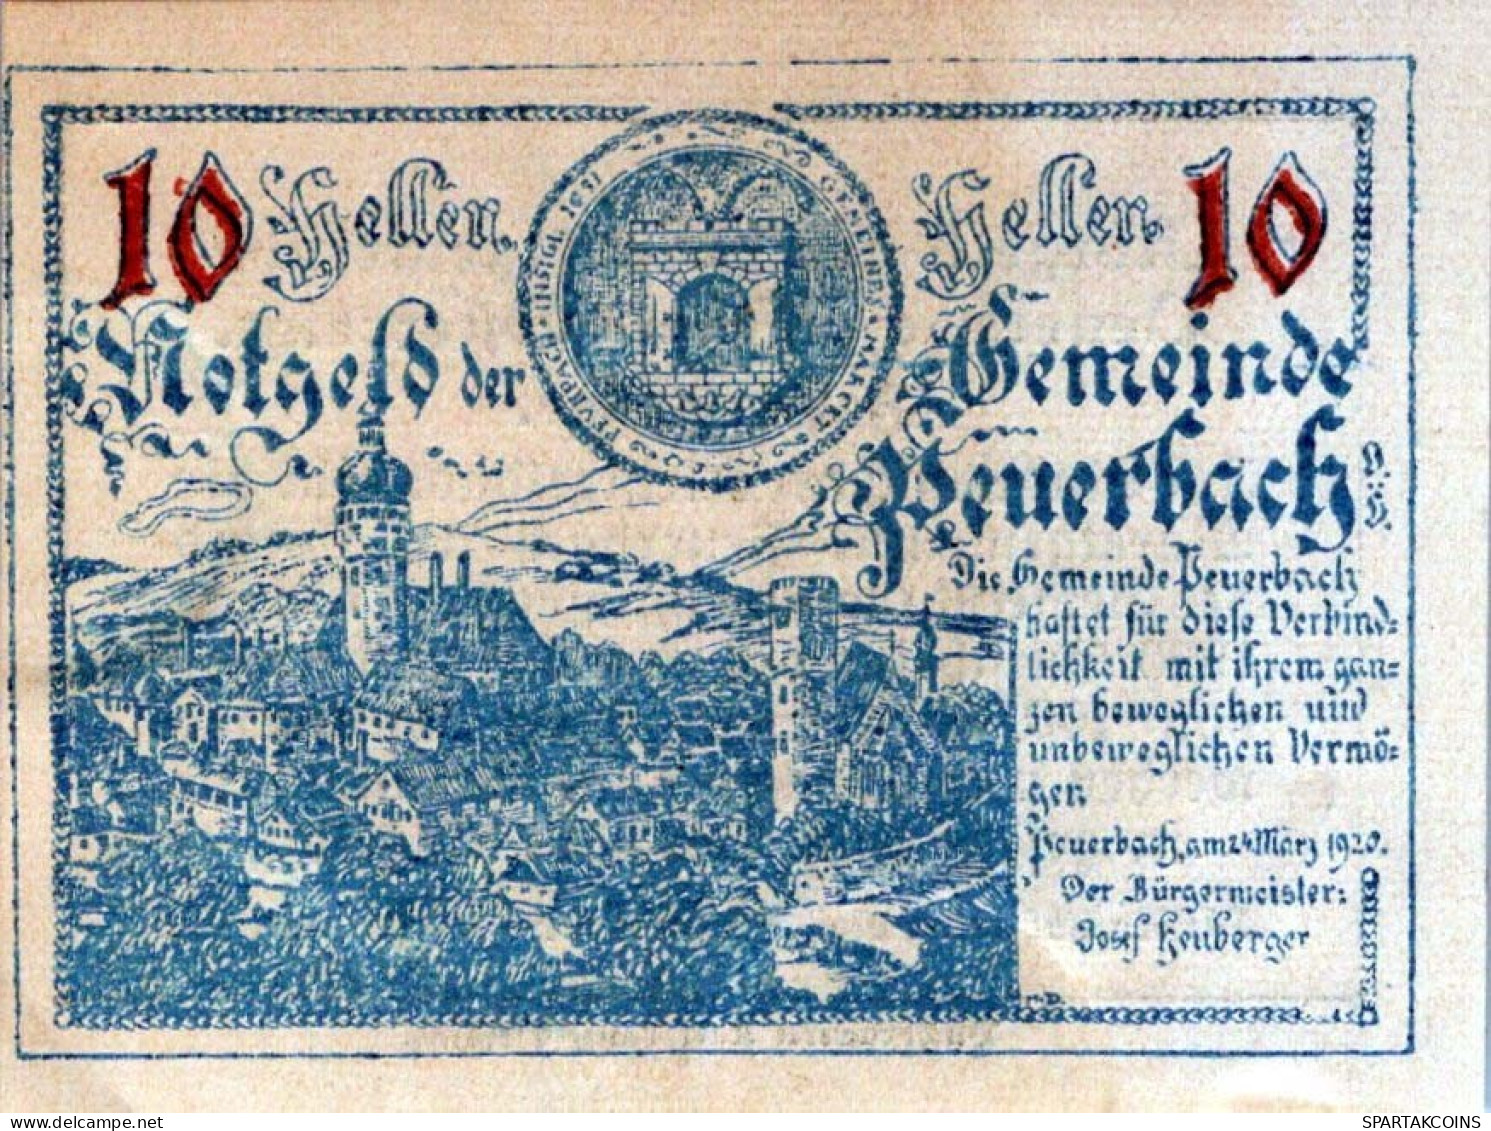 10 HELLER 1920 Stadt PEUERBACH Oberösterreich Österreich Notgeld Banknote #PE292 - [11] Emissions Locales